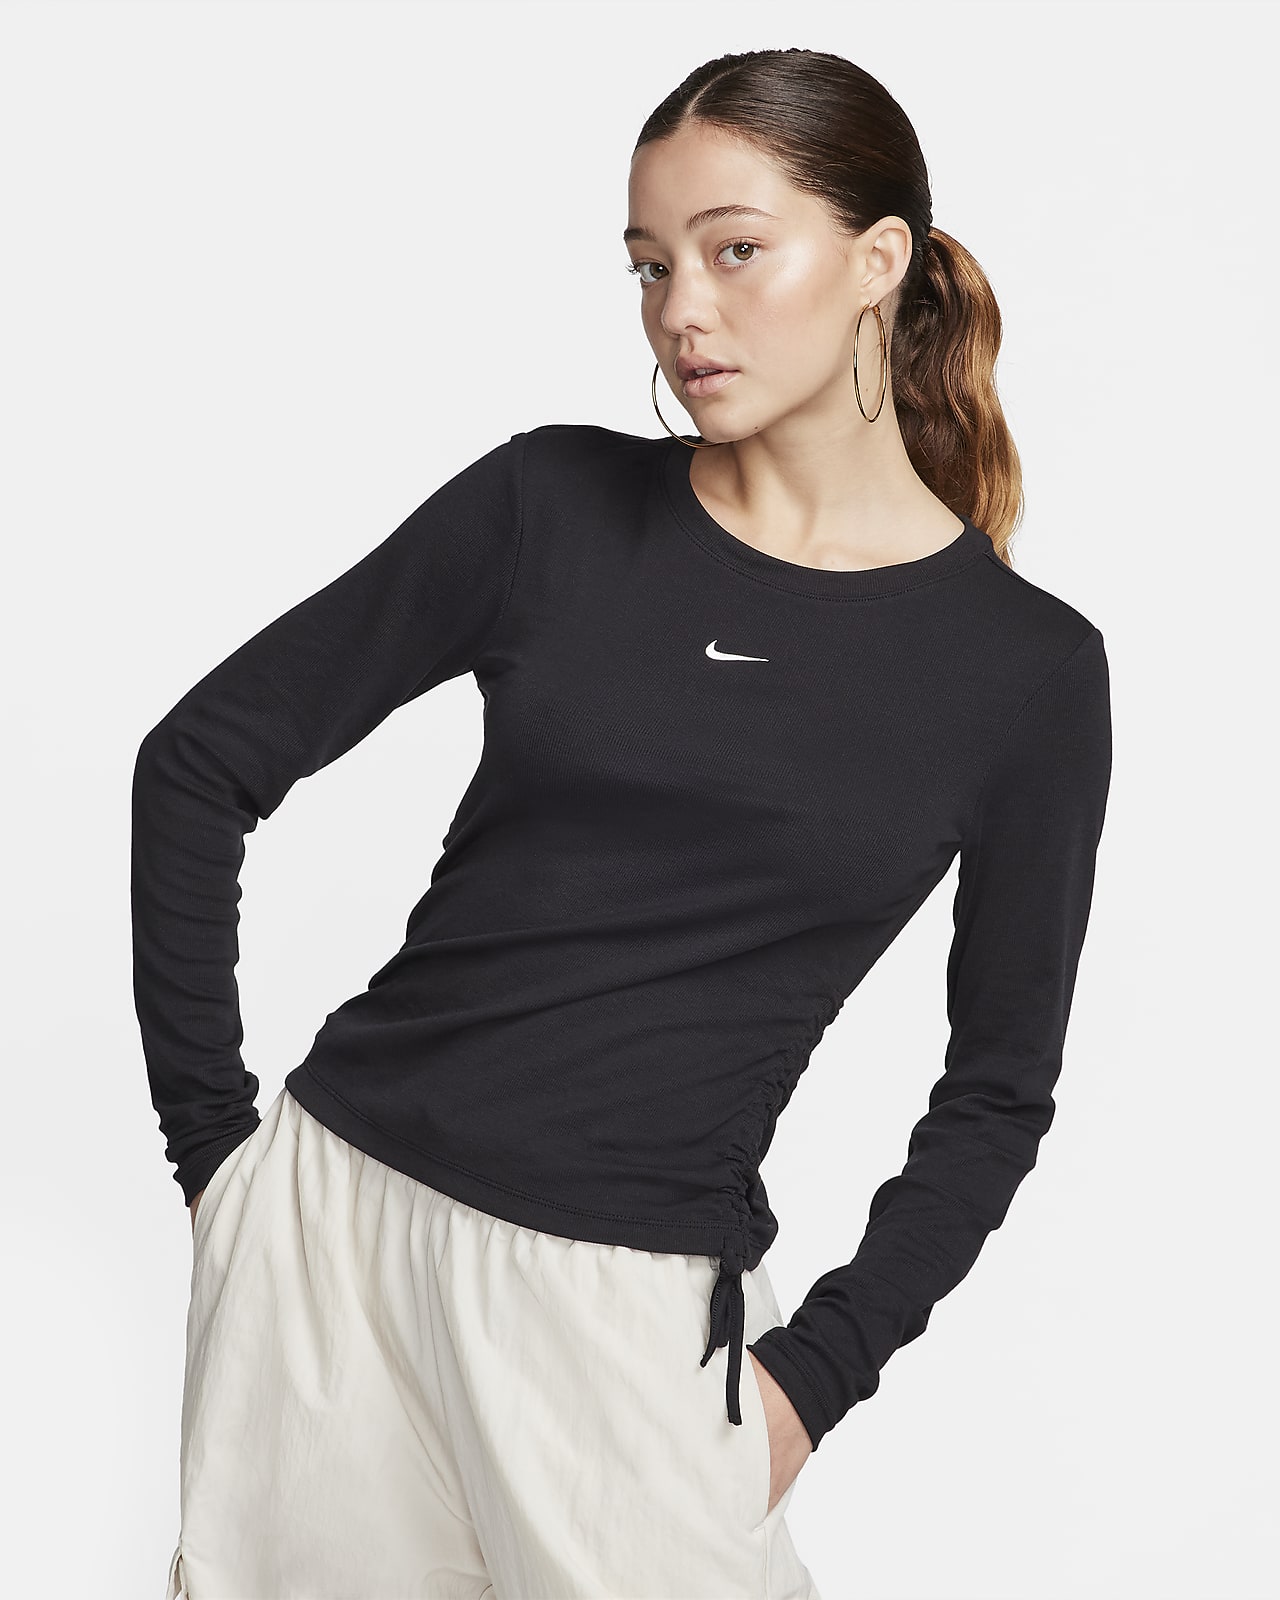 Crop top Mod à manches longues côtelé Nike Sportswear Essential pour femme